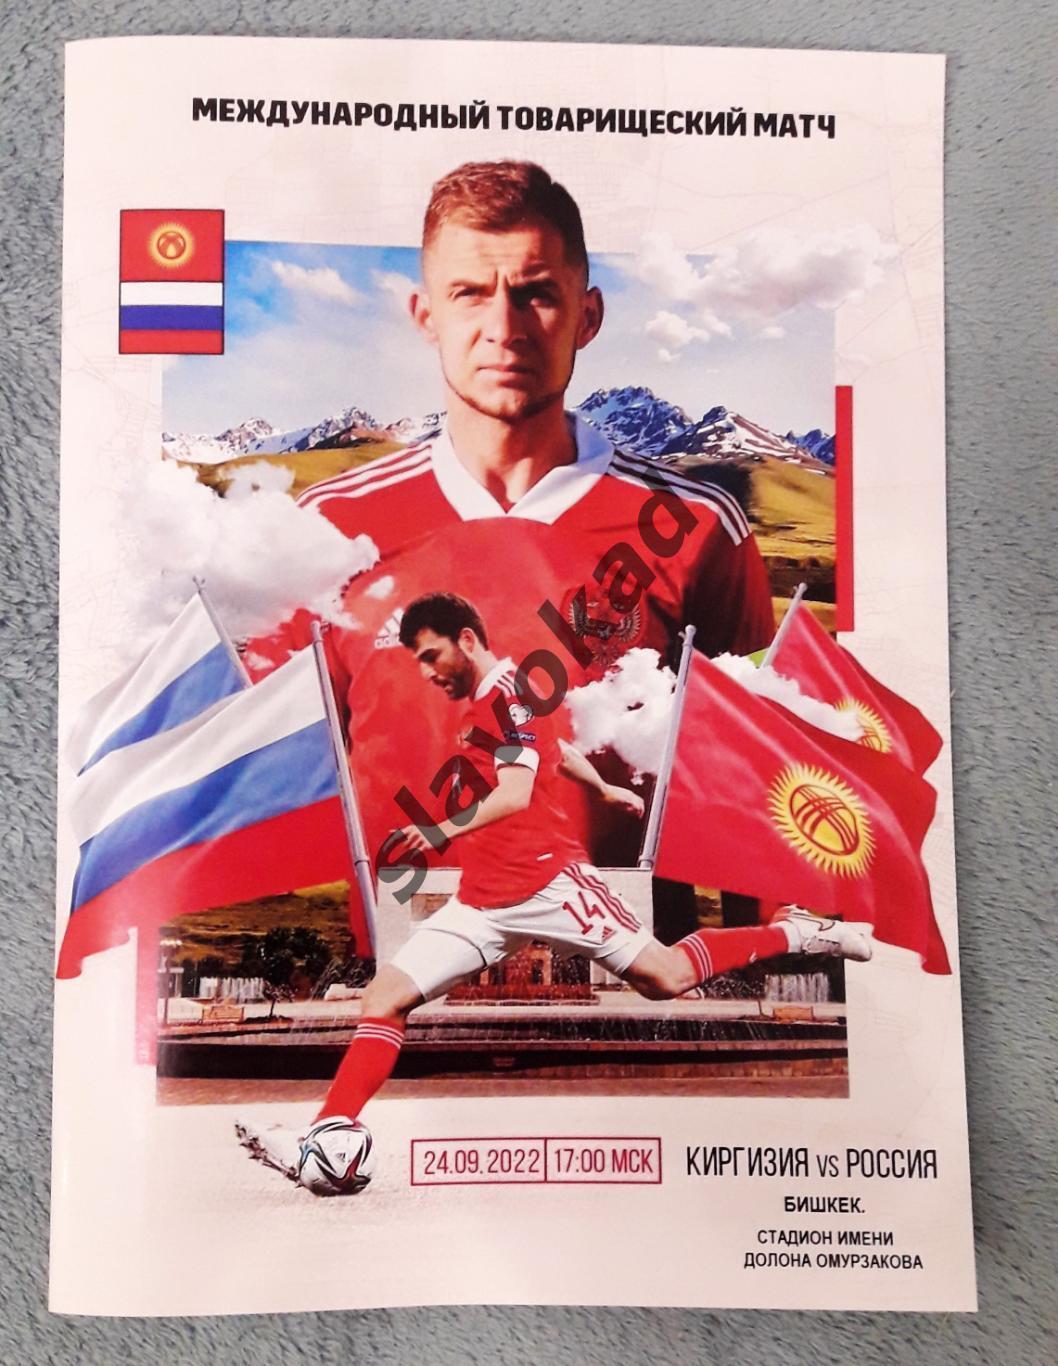 Киргизия- Россия 24.09.2022 - международный товарищеский матч